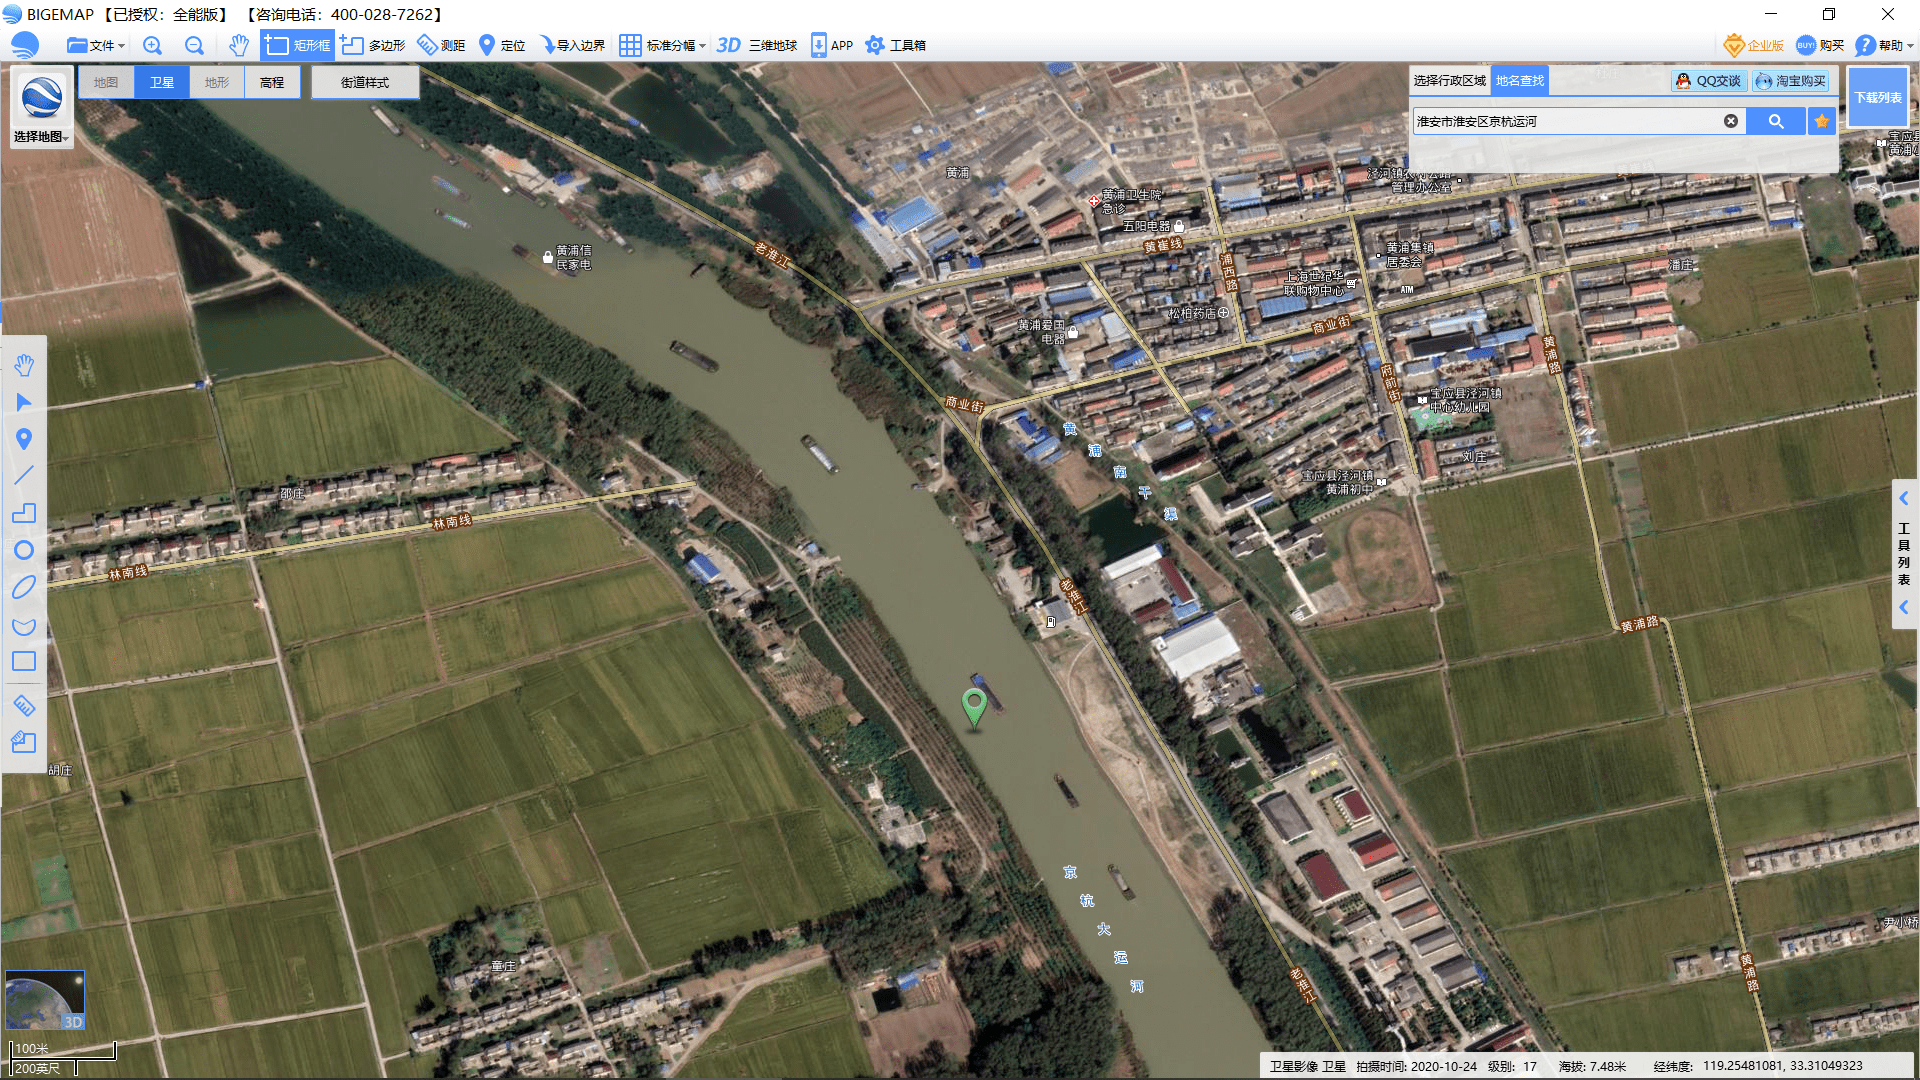 京杭大运河卫星地图(来源:bigemap大地图)